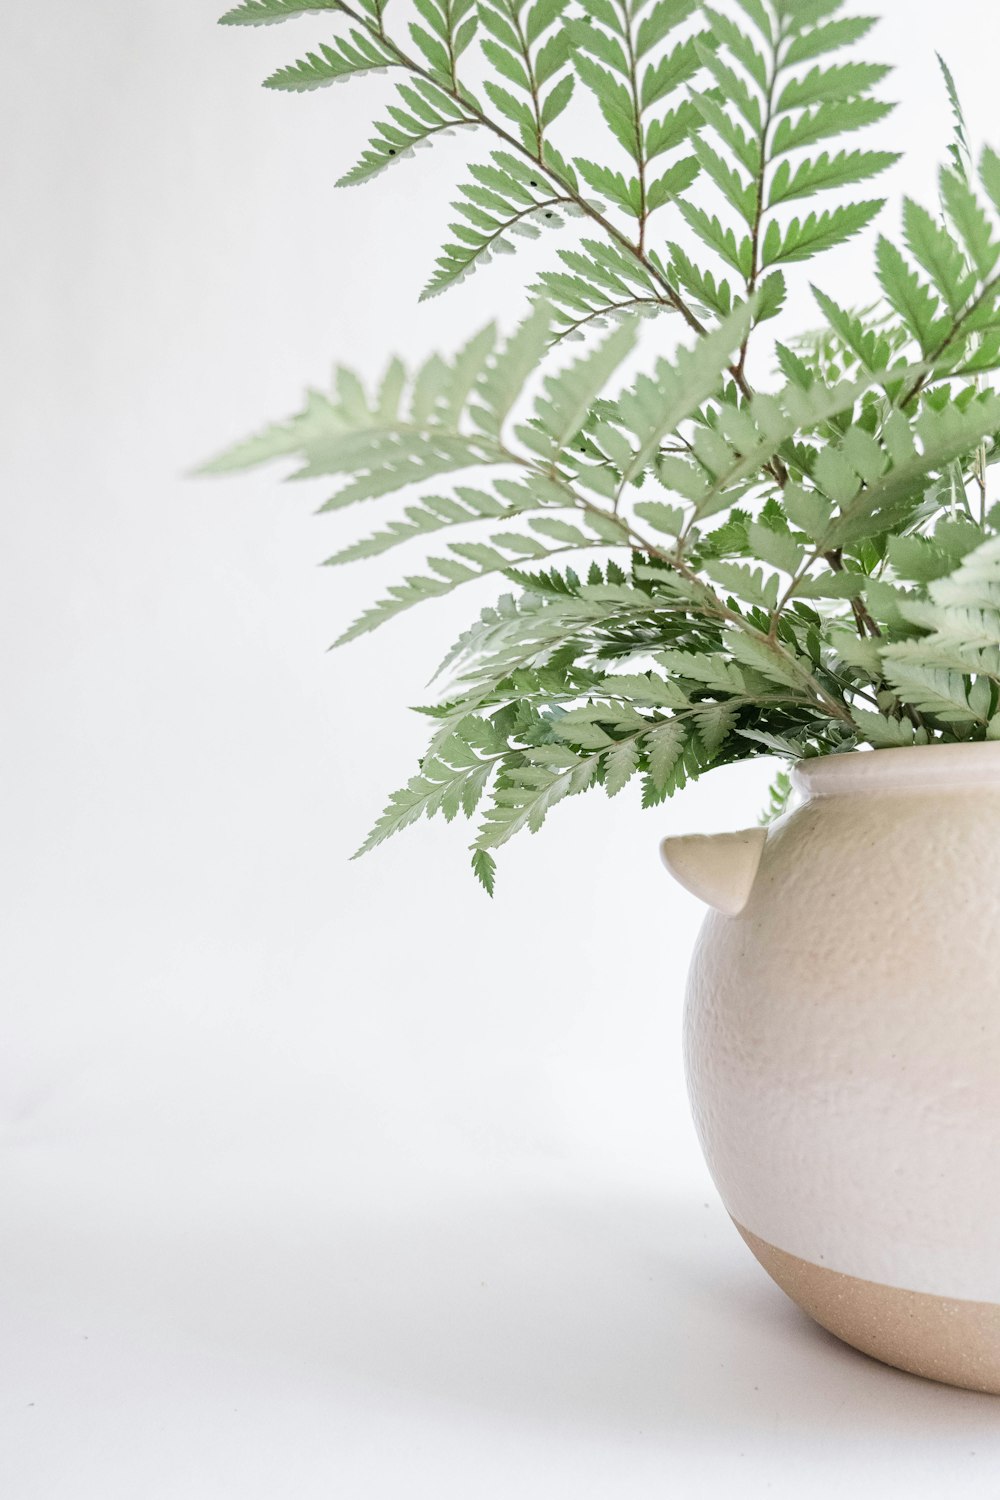 grüne Pflanze auf weißer Keramikvase